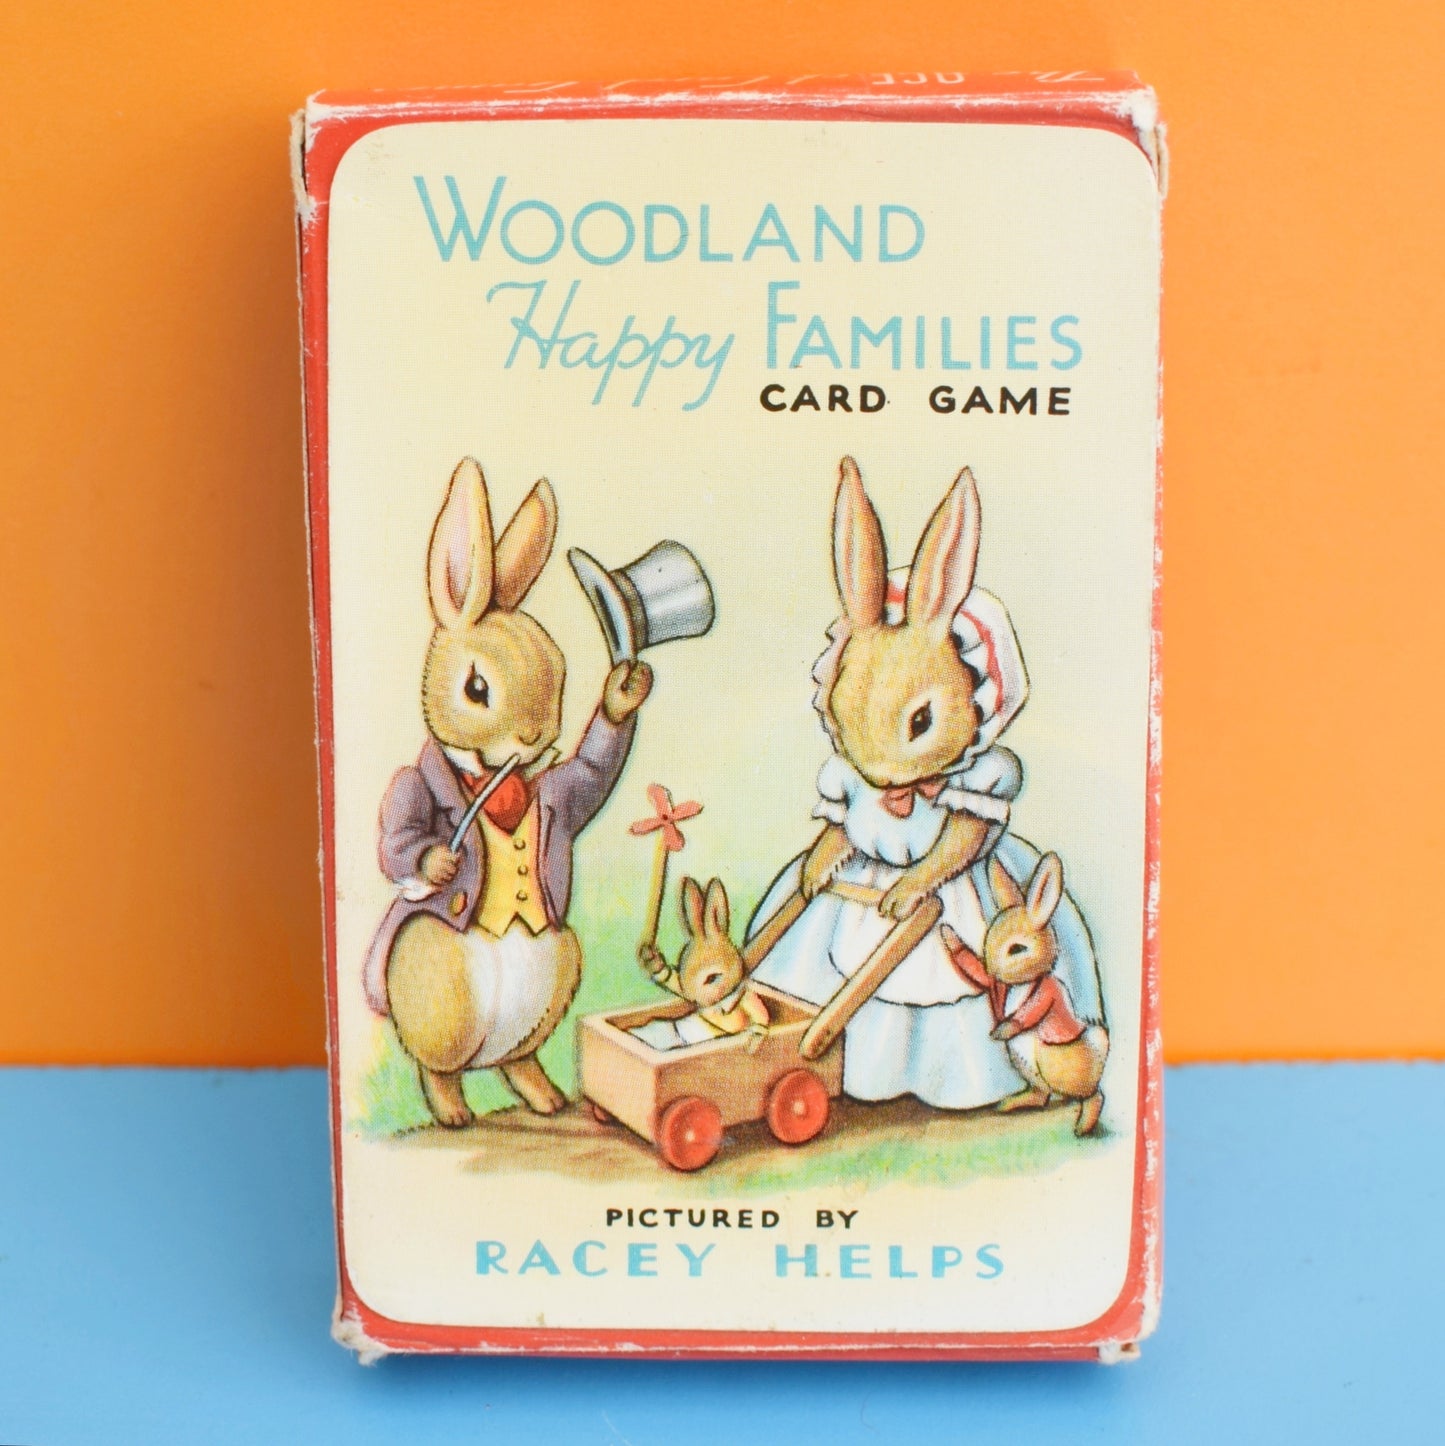 Vintage 1950s Woodland Card Games